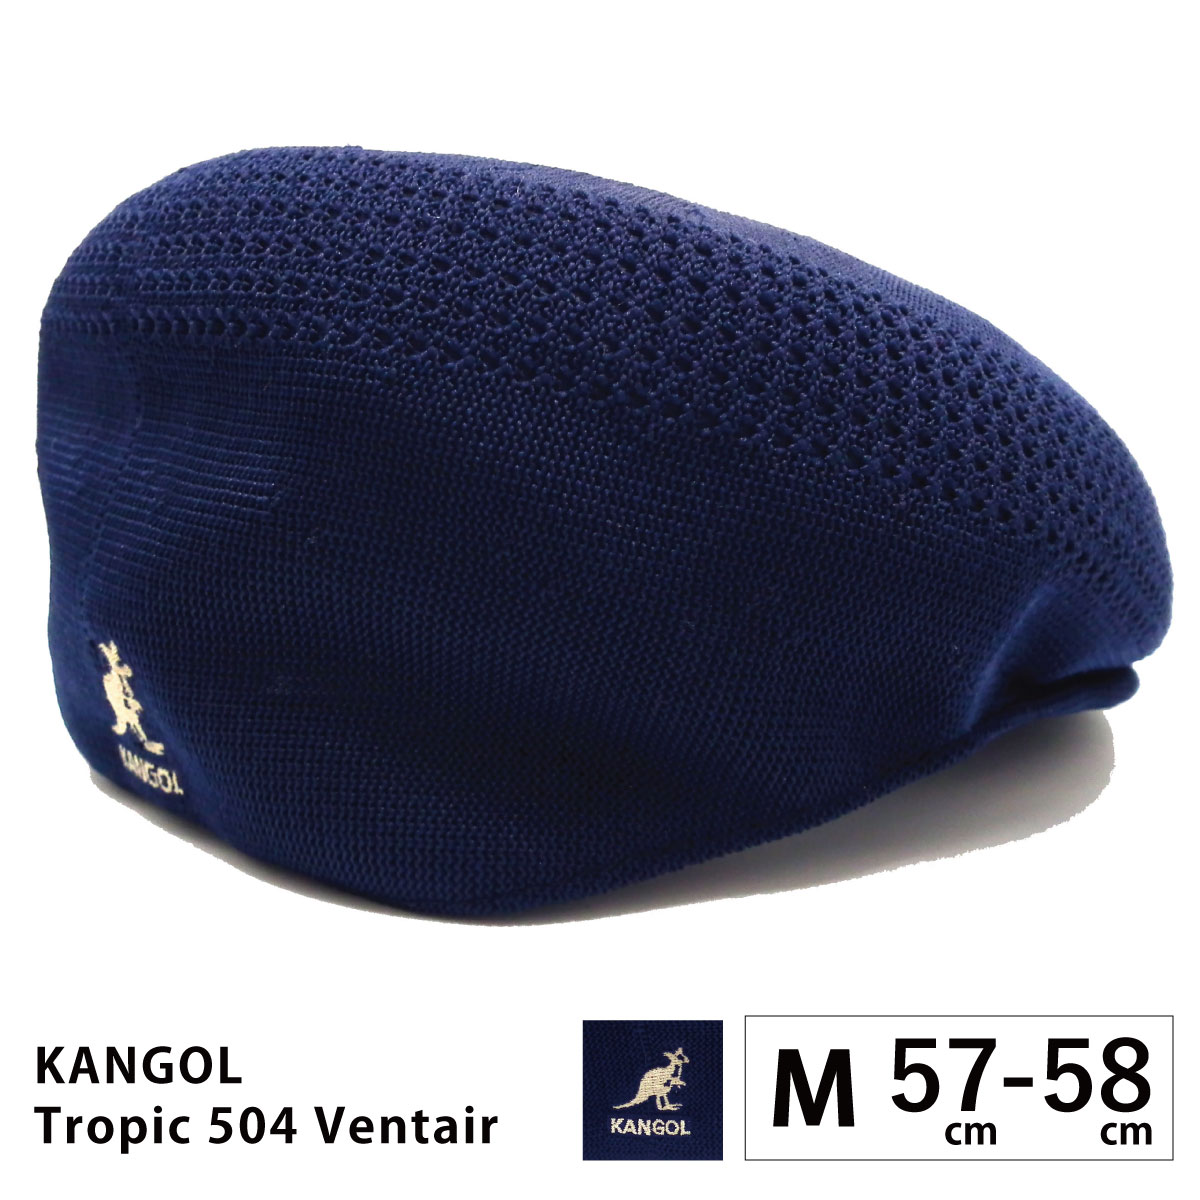 KANGOL ハンチング帽 メンズ 帽子 大きい TROPIC 504 VENTAIR 57cm-64cm メッシュ 涼しい  kan-195-169001 カンゴール 正規取扱